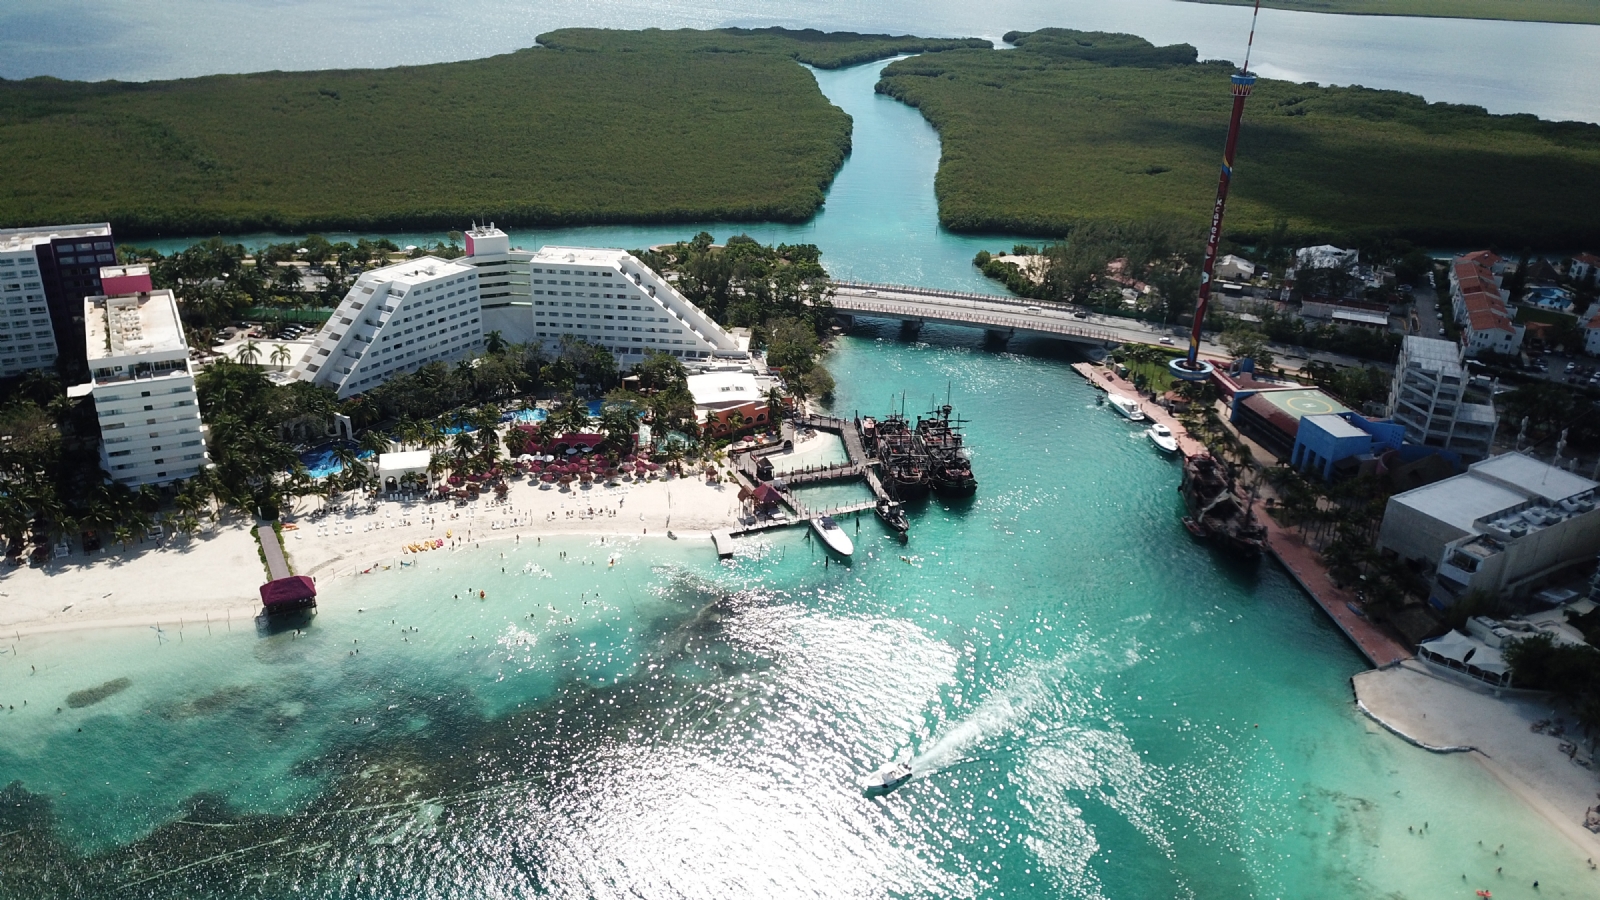 Empleos en Cancún: Abren más de 100 vacantes en el sector turístico